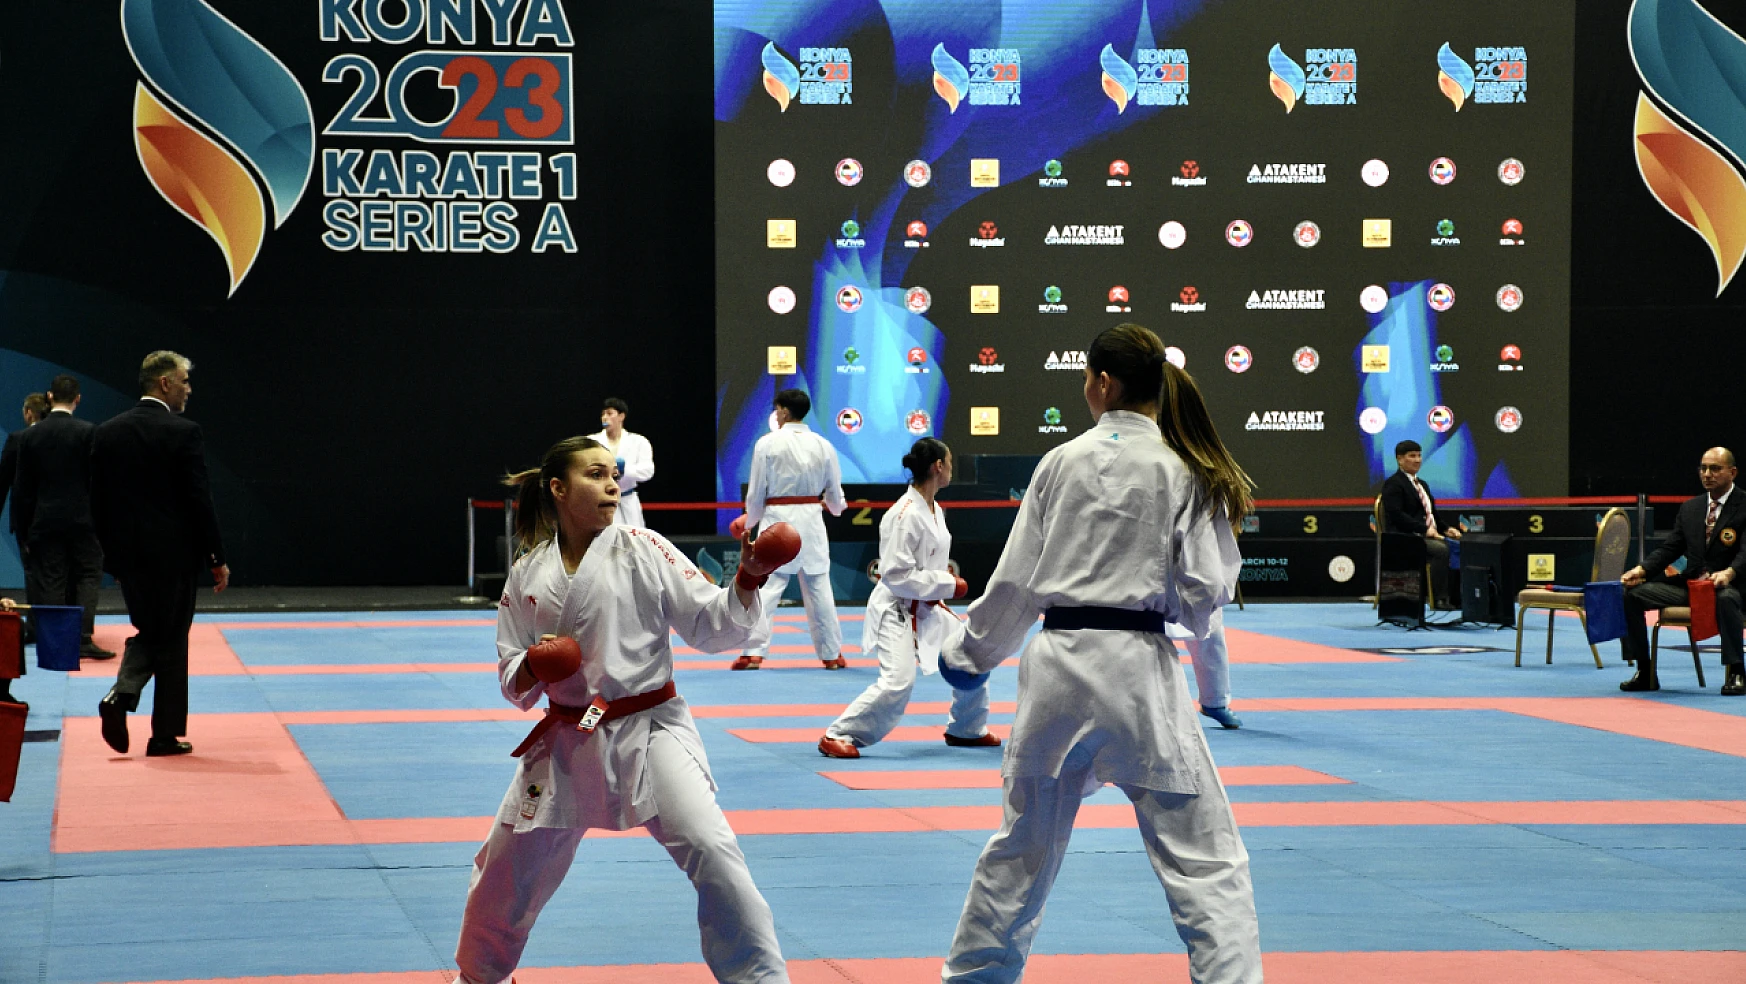 Karate 1 A serisi Konya'da devam ediyor